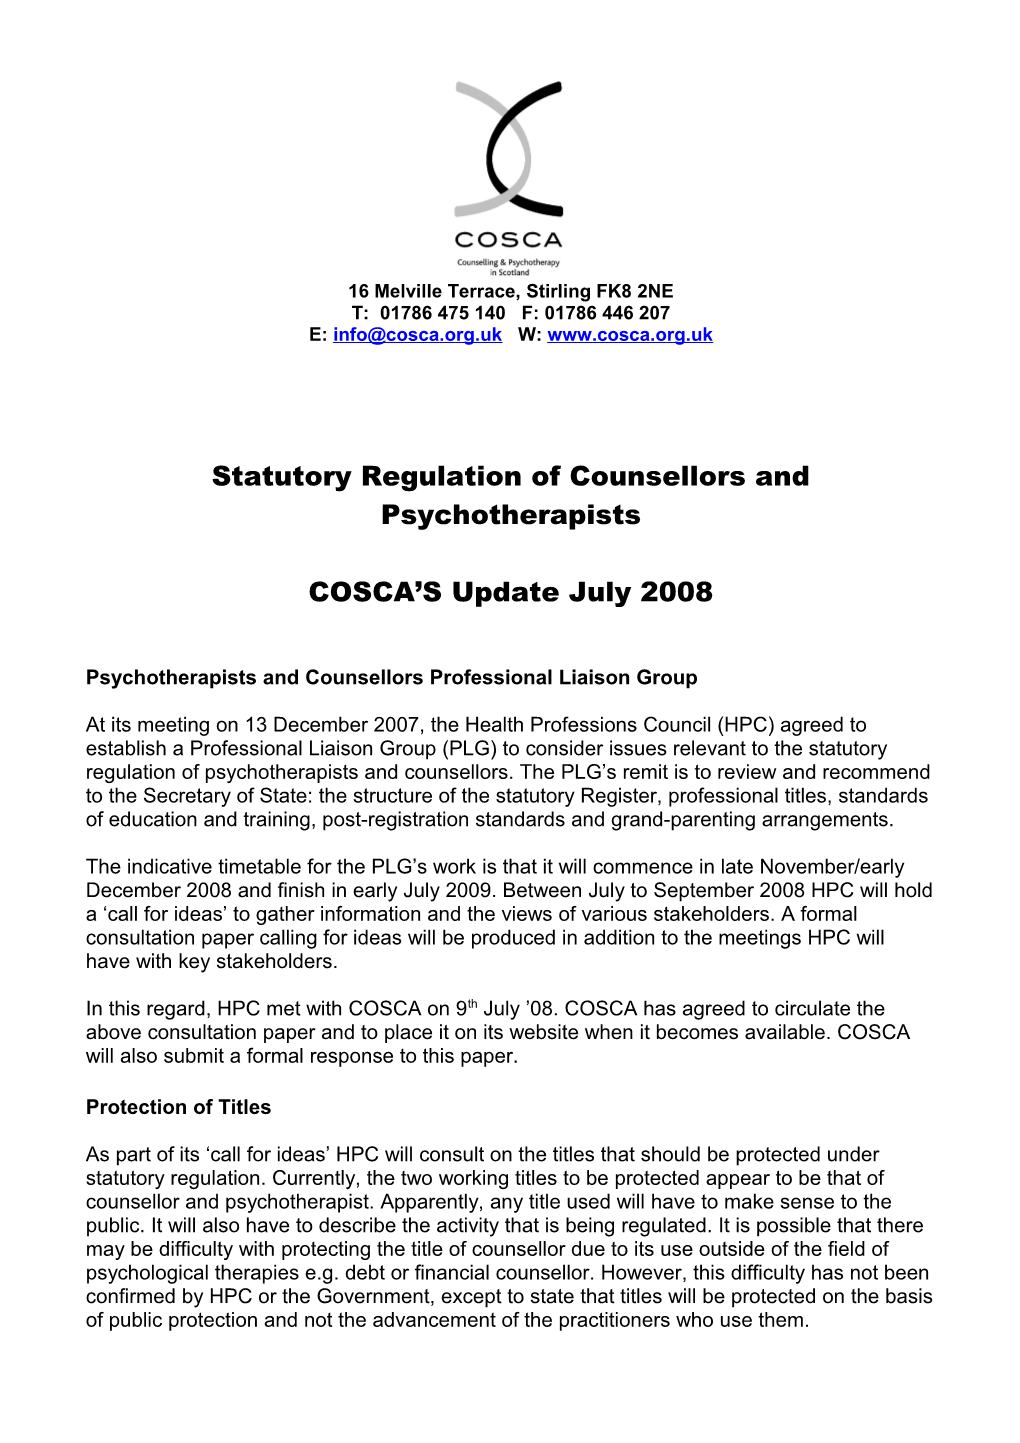 Statutory Regulation of Counsellors and Psychotherapists